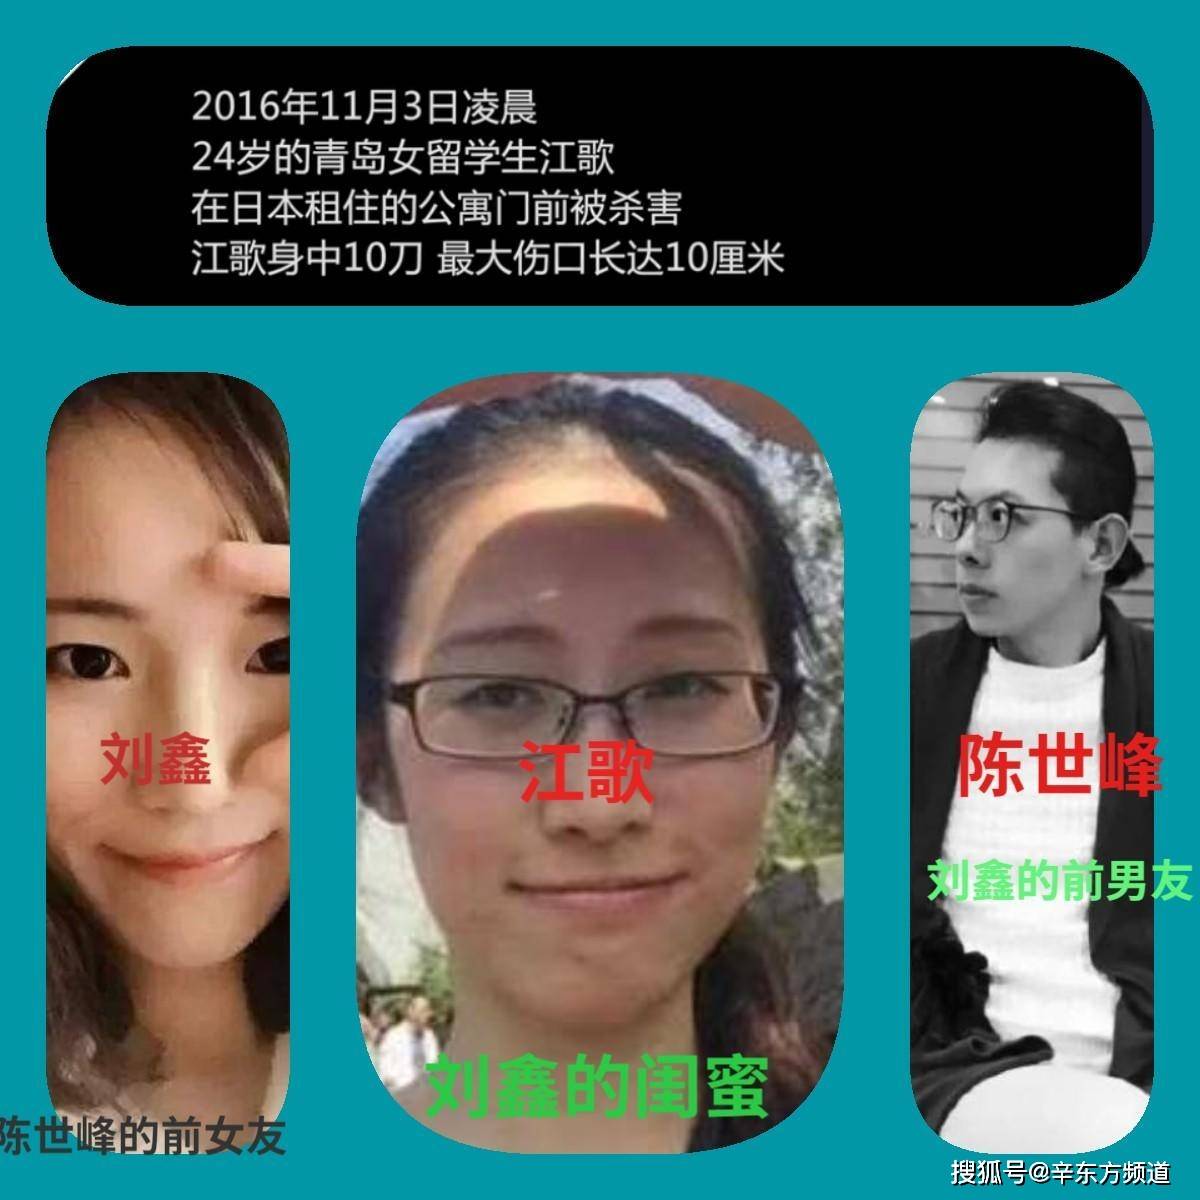 留日学生江歌被夺去性命,曝刘鑫隐瞒细节,揭示了人性的一面